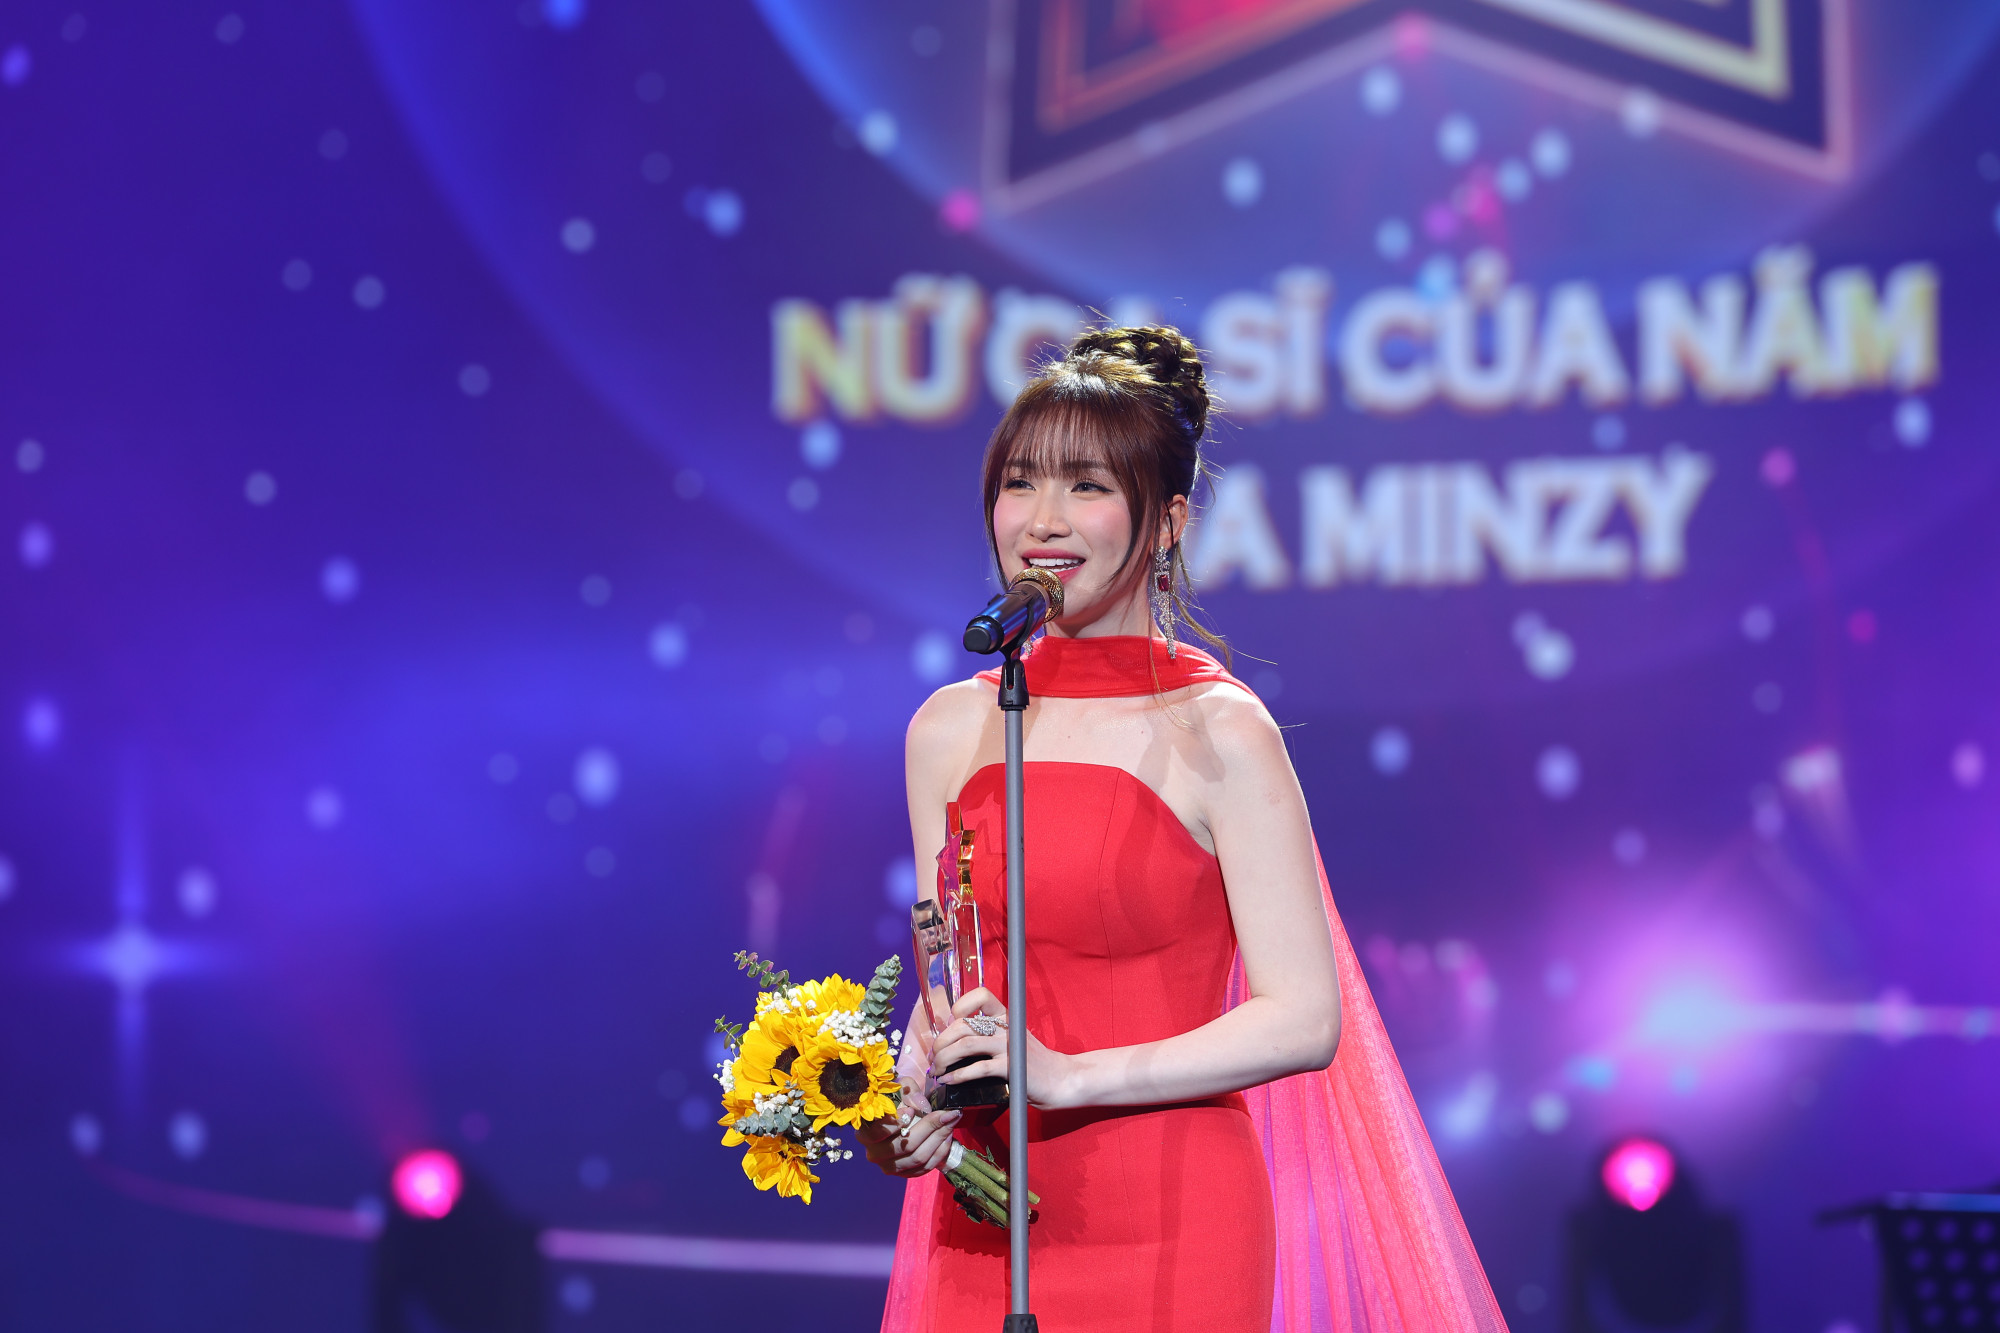 Hoà Minzy cảm ơn khán giả đã ưu ái bình chọn và ủng hộ cô trong hành trình âm nhạc đáng nhớ đã qua